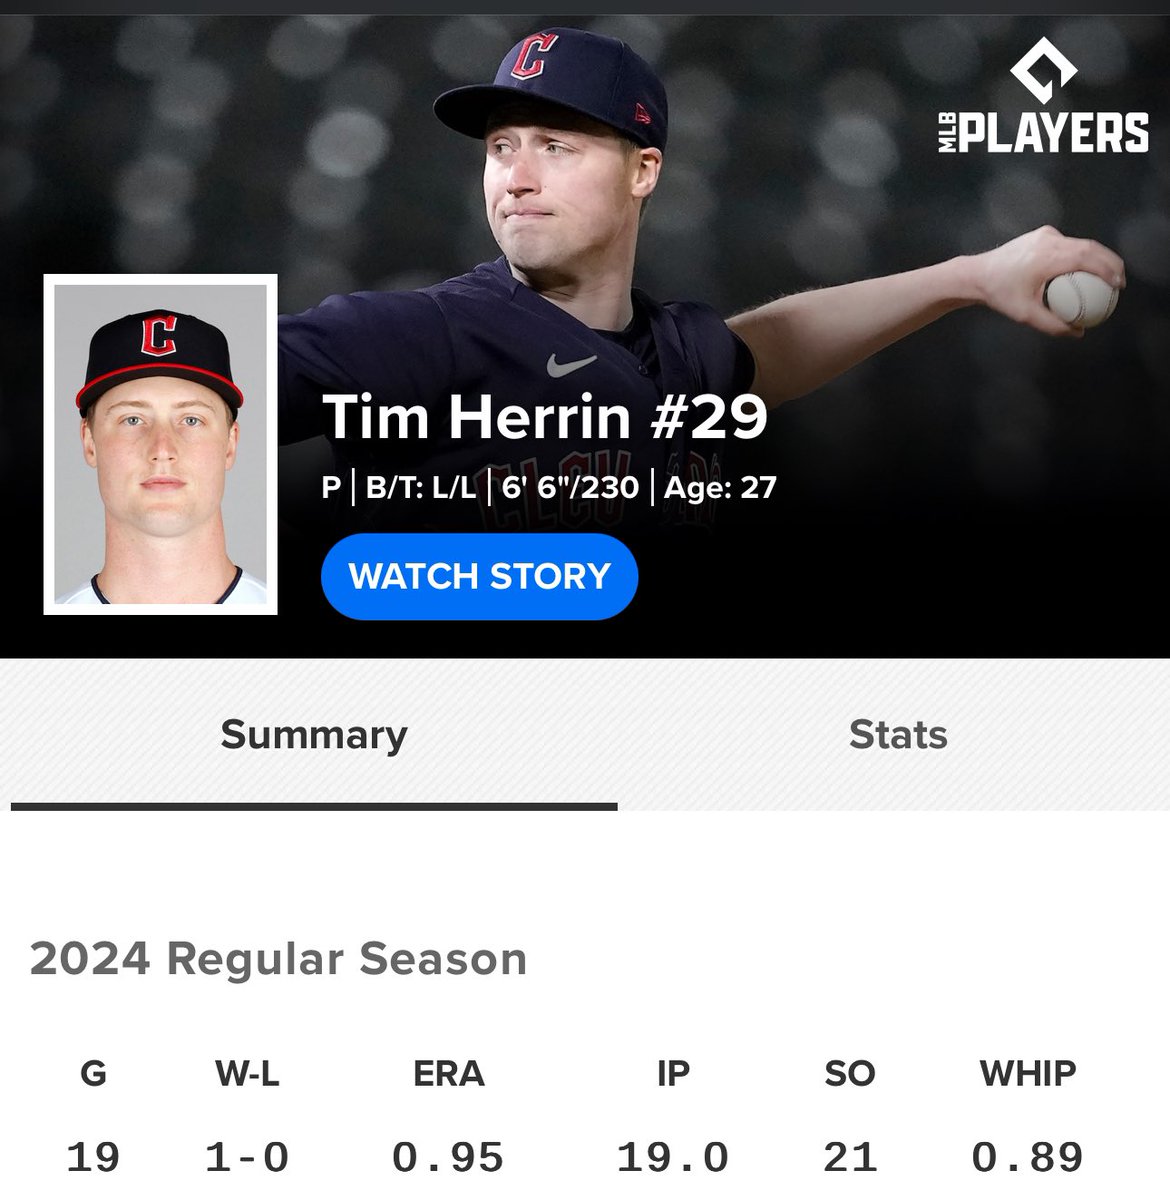 Tim Herrin is an unsung hero. Look at those numbers. Beast.